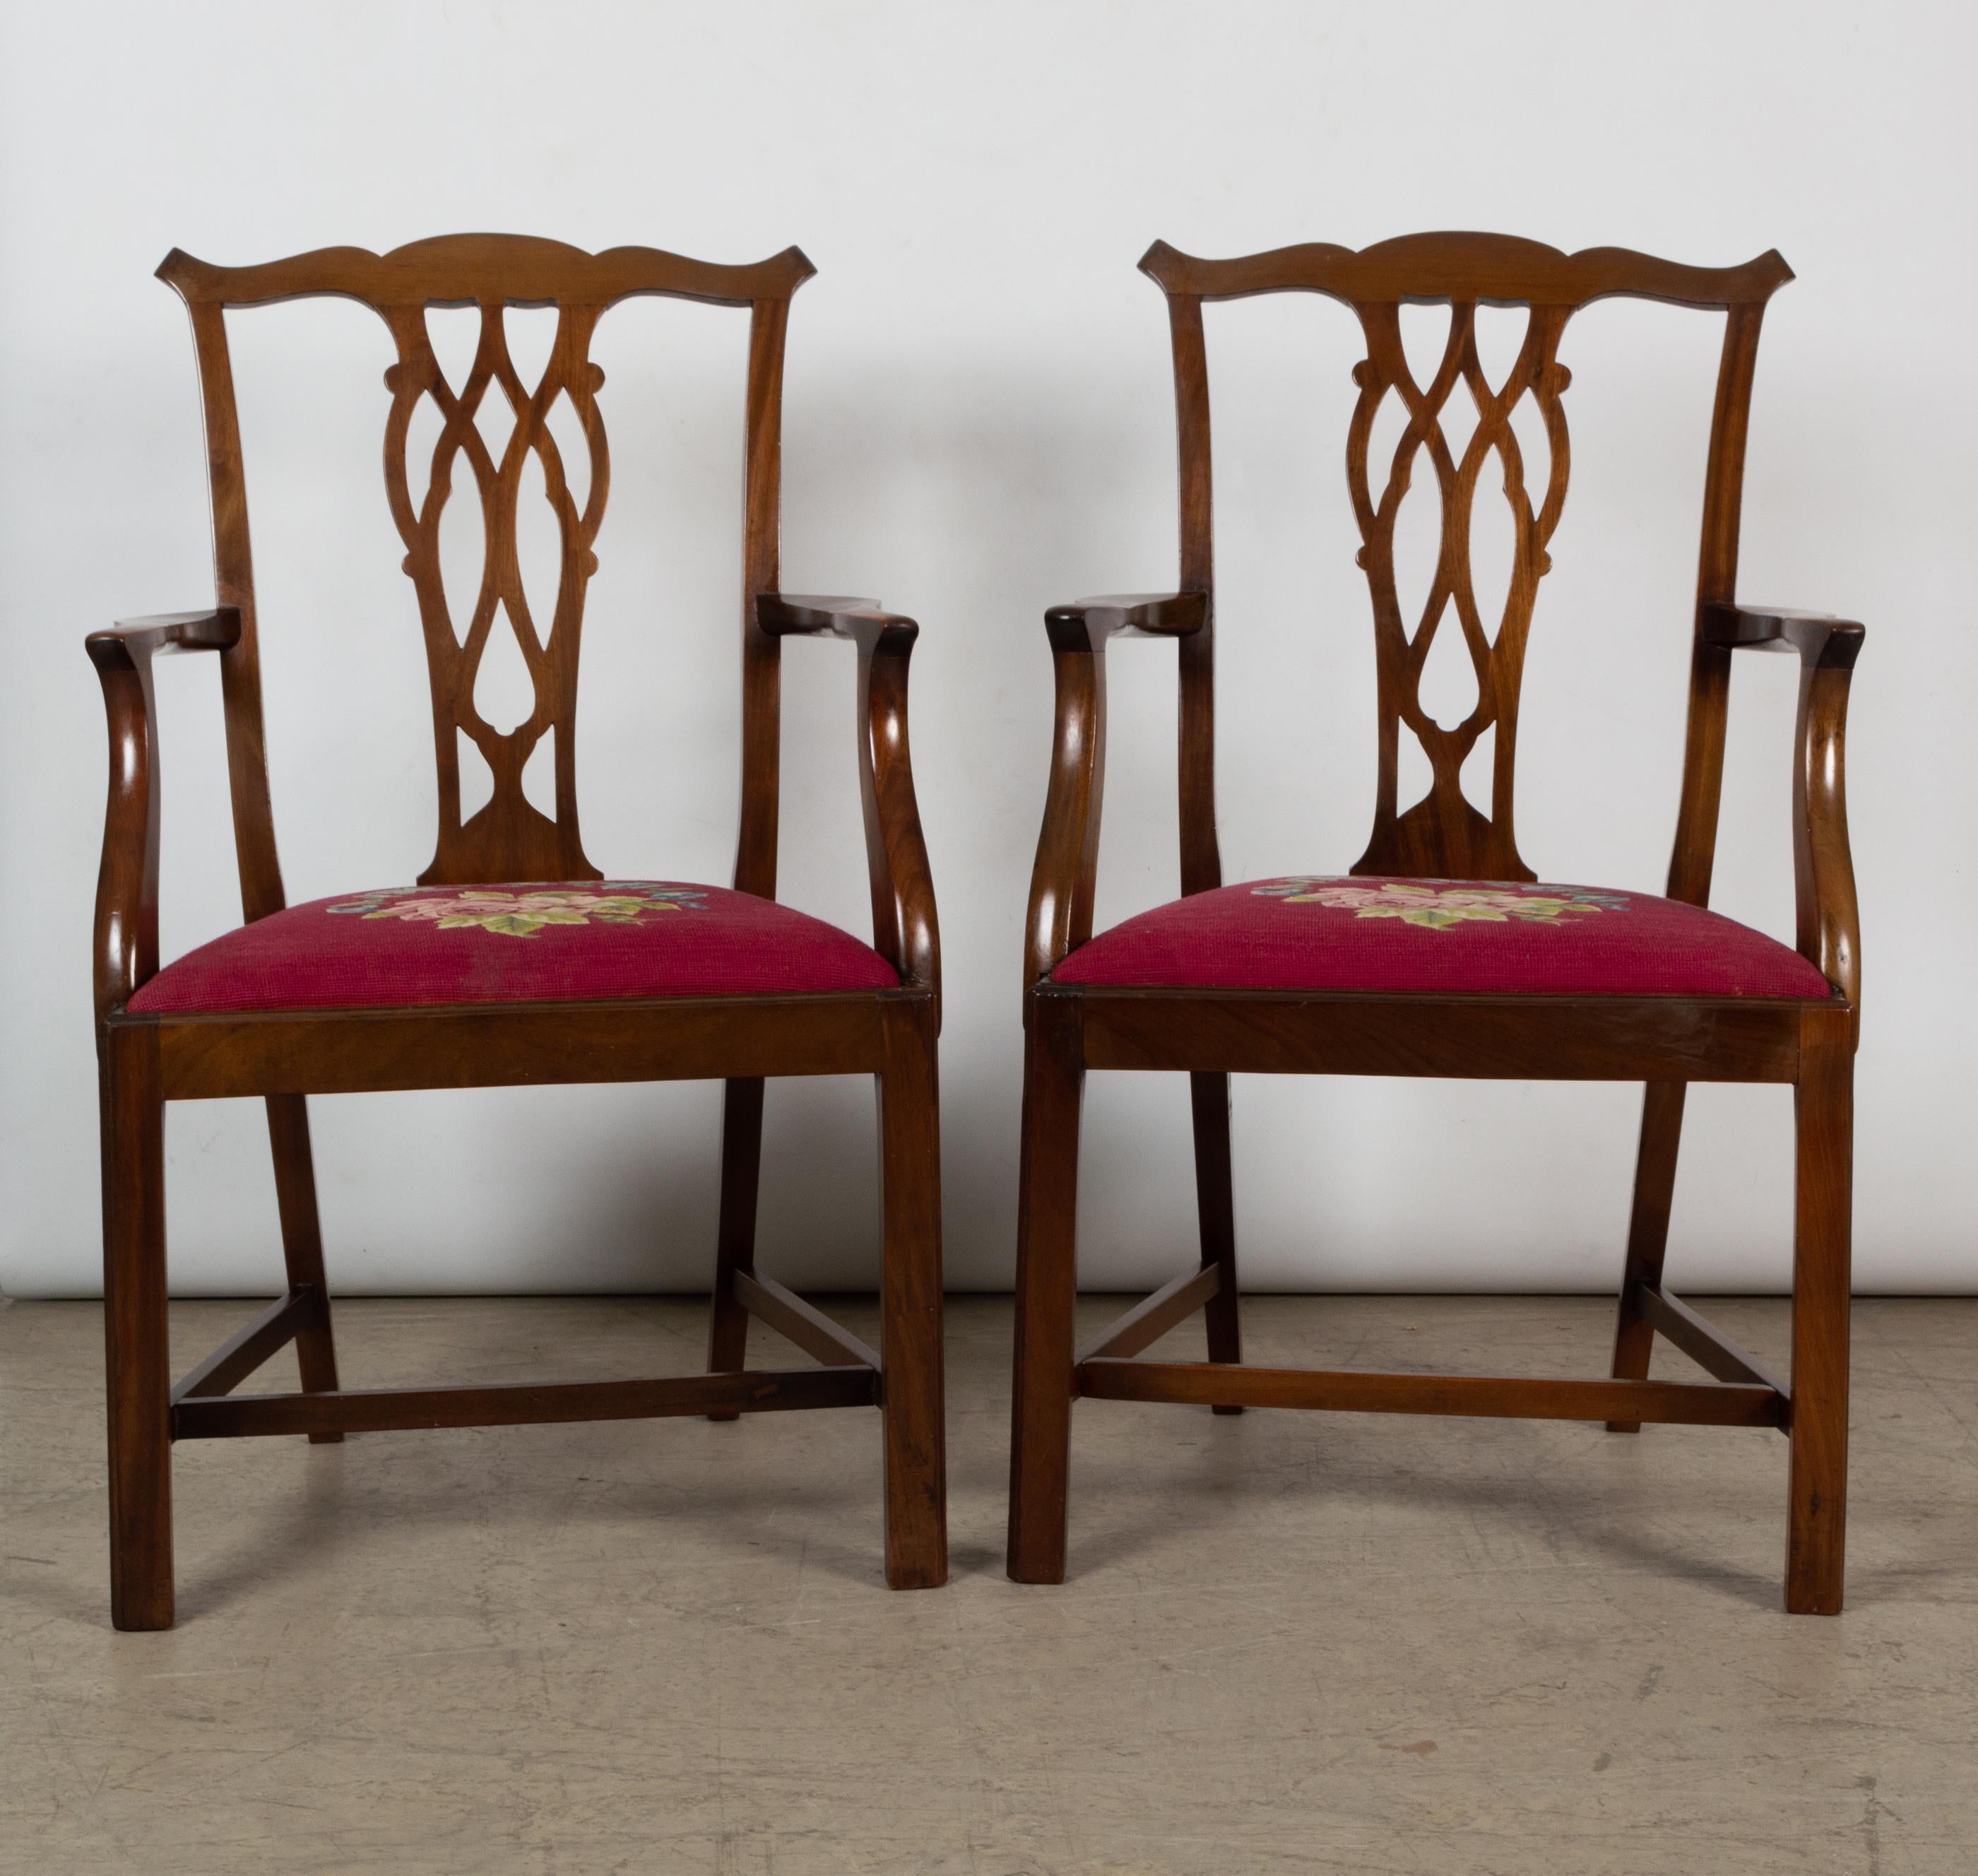 6 anciennes chaises de salle à manger en acajou de style anglais victorien Chippendale Revival

Un bel ensemble de six chaises en acajou du 19e siècle, de style Chippendale.
Composé de quatre + deux sculpteurs.

La traverse supérieure est